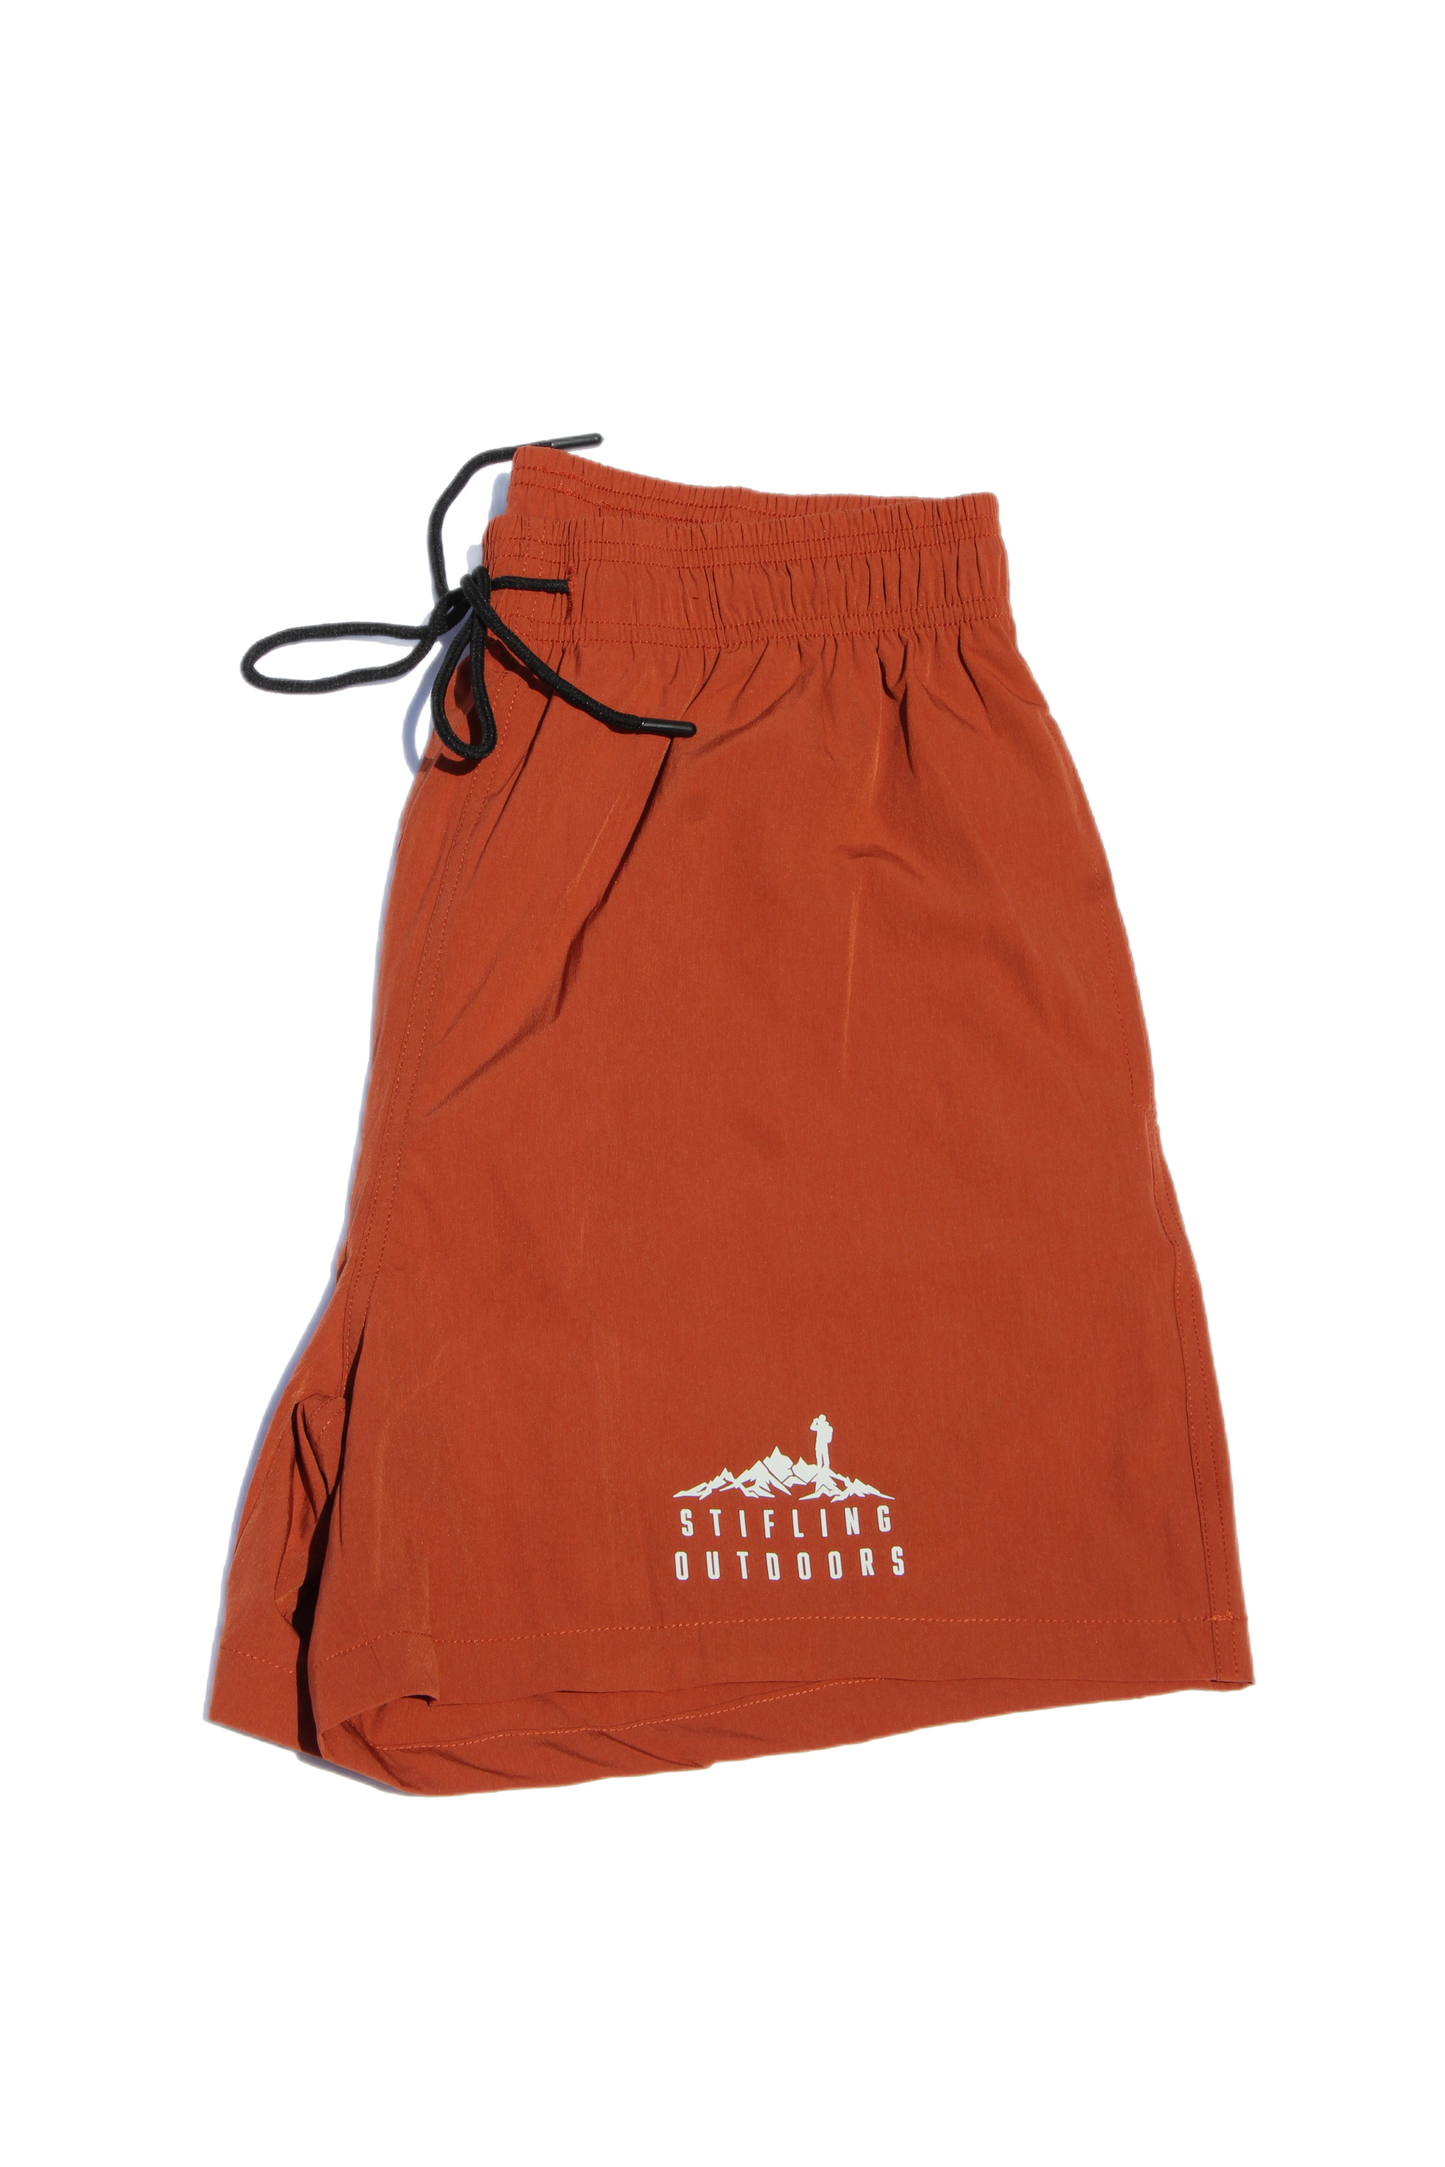 Men's Hiking Shorts in Burnt Orange